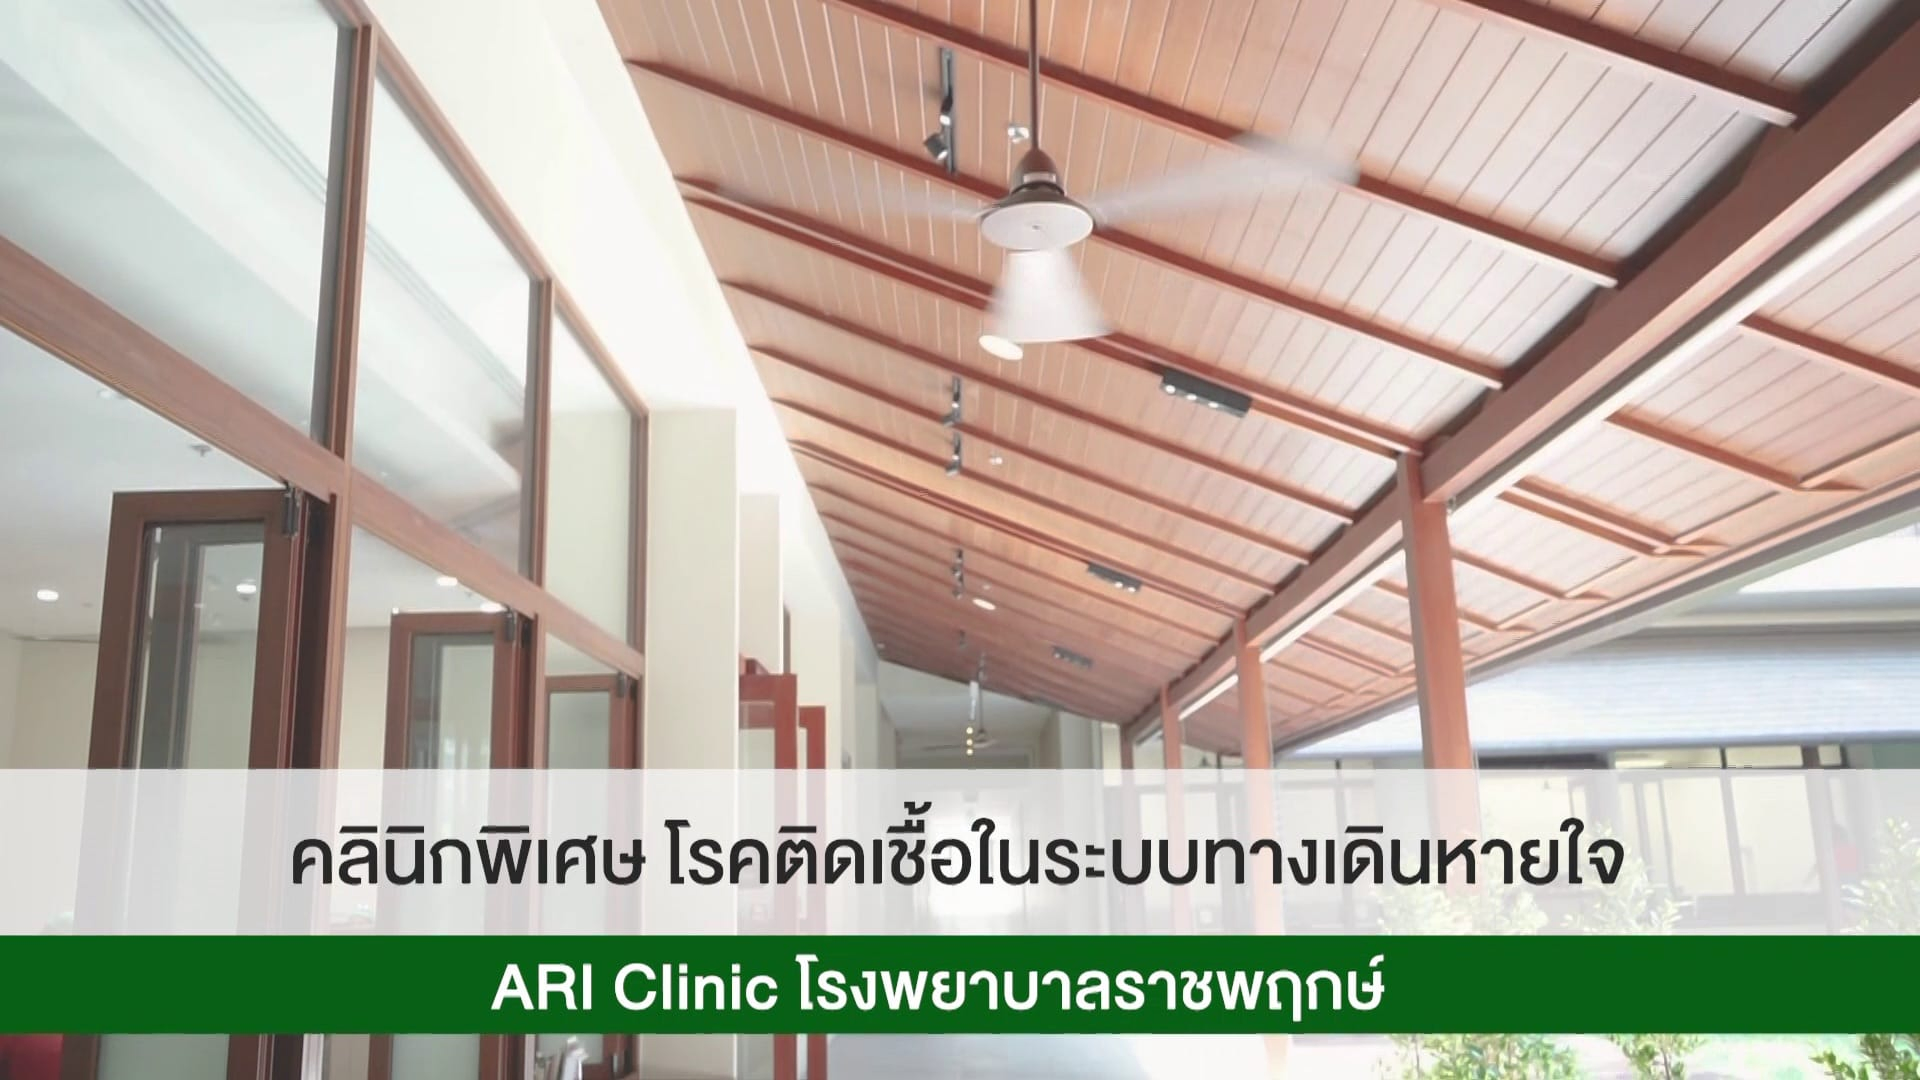 คลินิกพิเศษโรคติดเชื้อในระบบทางเดินหายใจ ARI Clinic โรงพยาบาลราชพฤกษ์